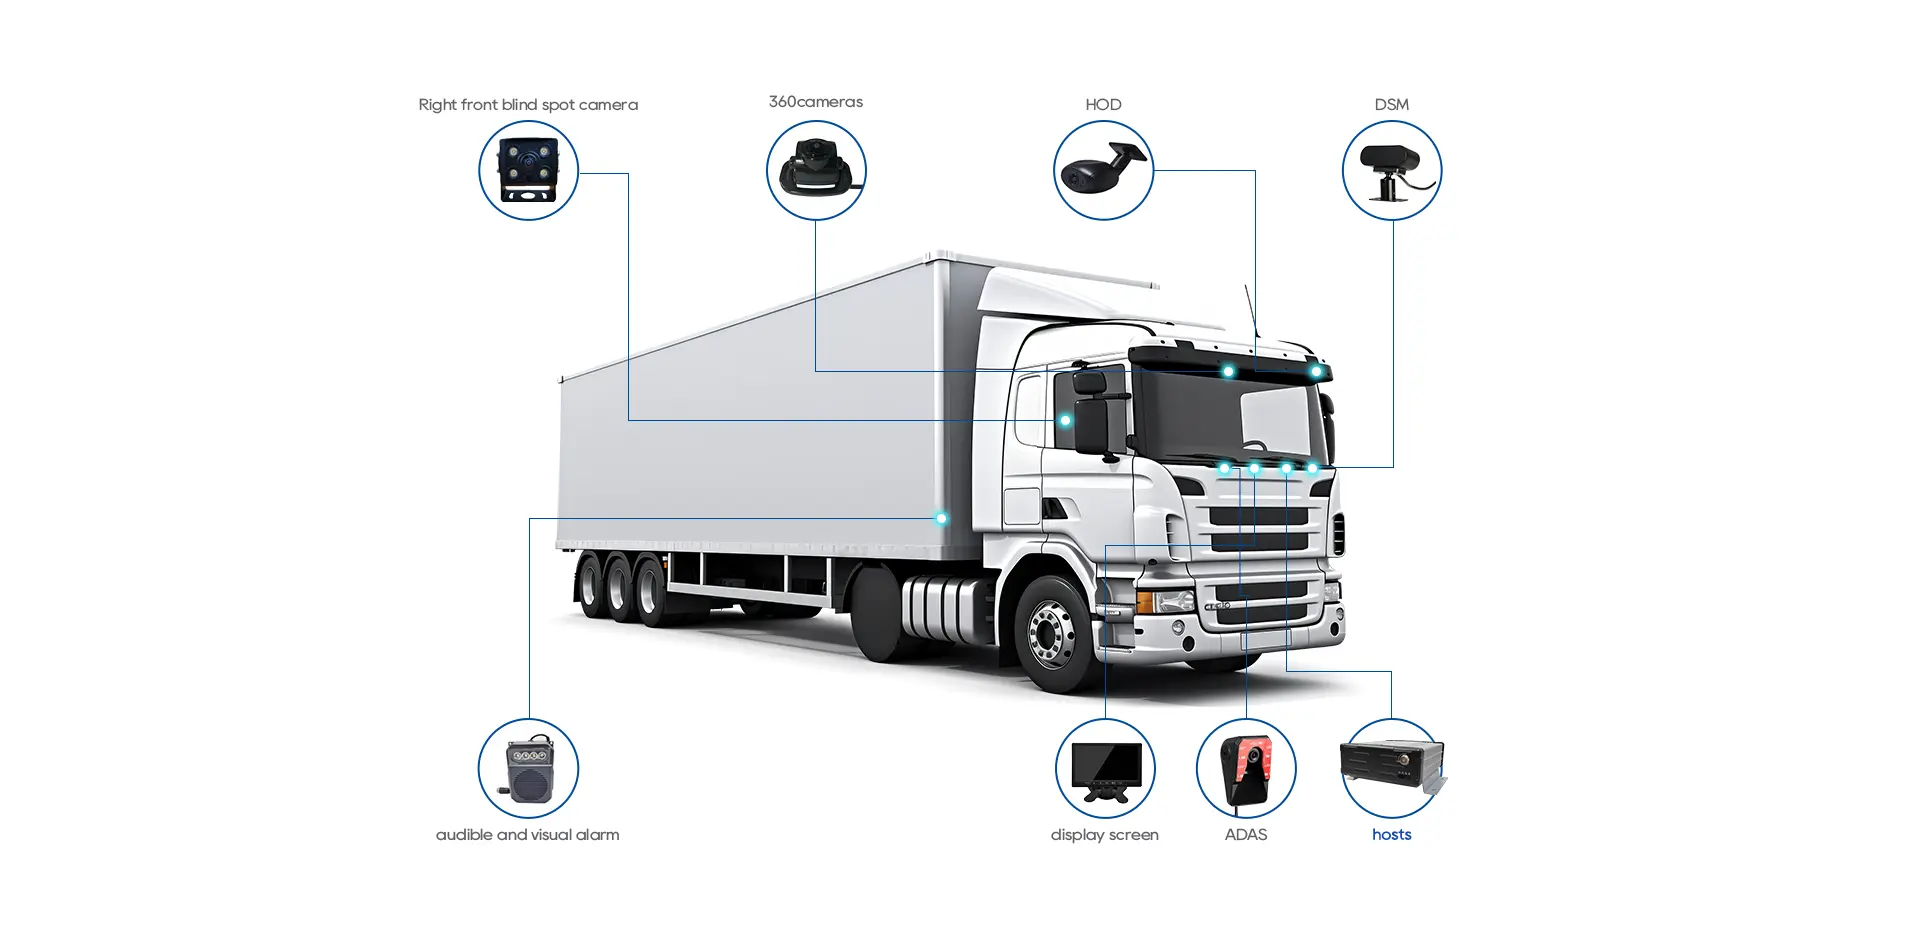 Surveillance Camera System for Trucks